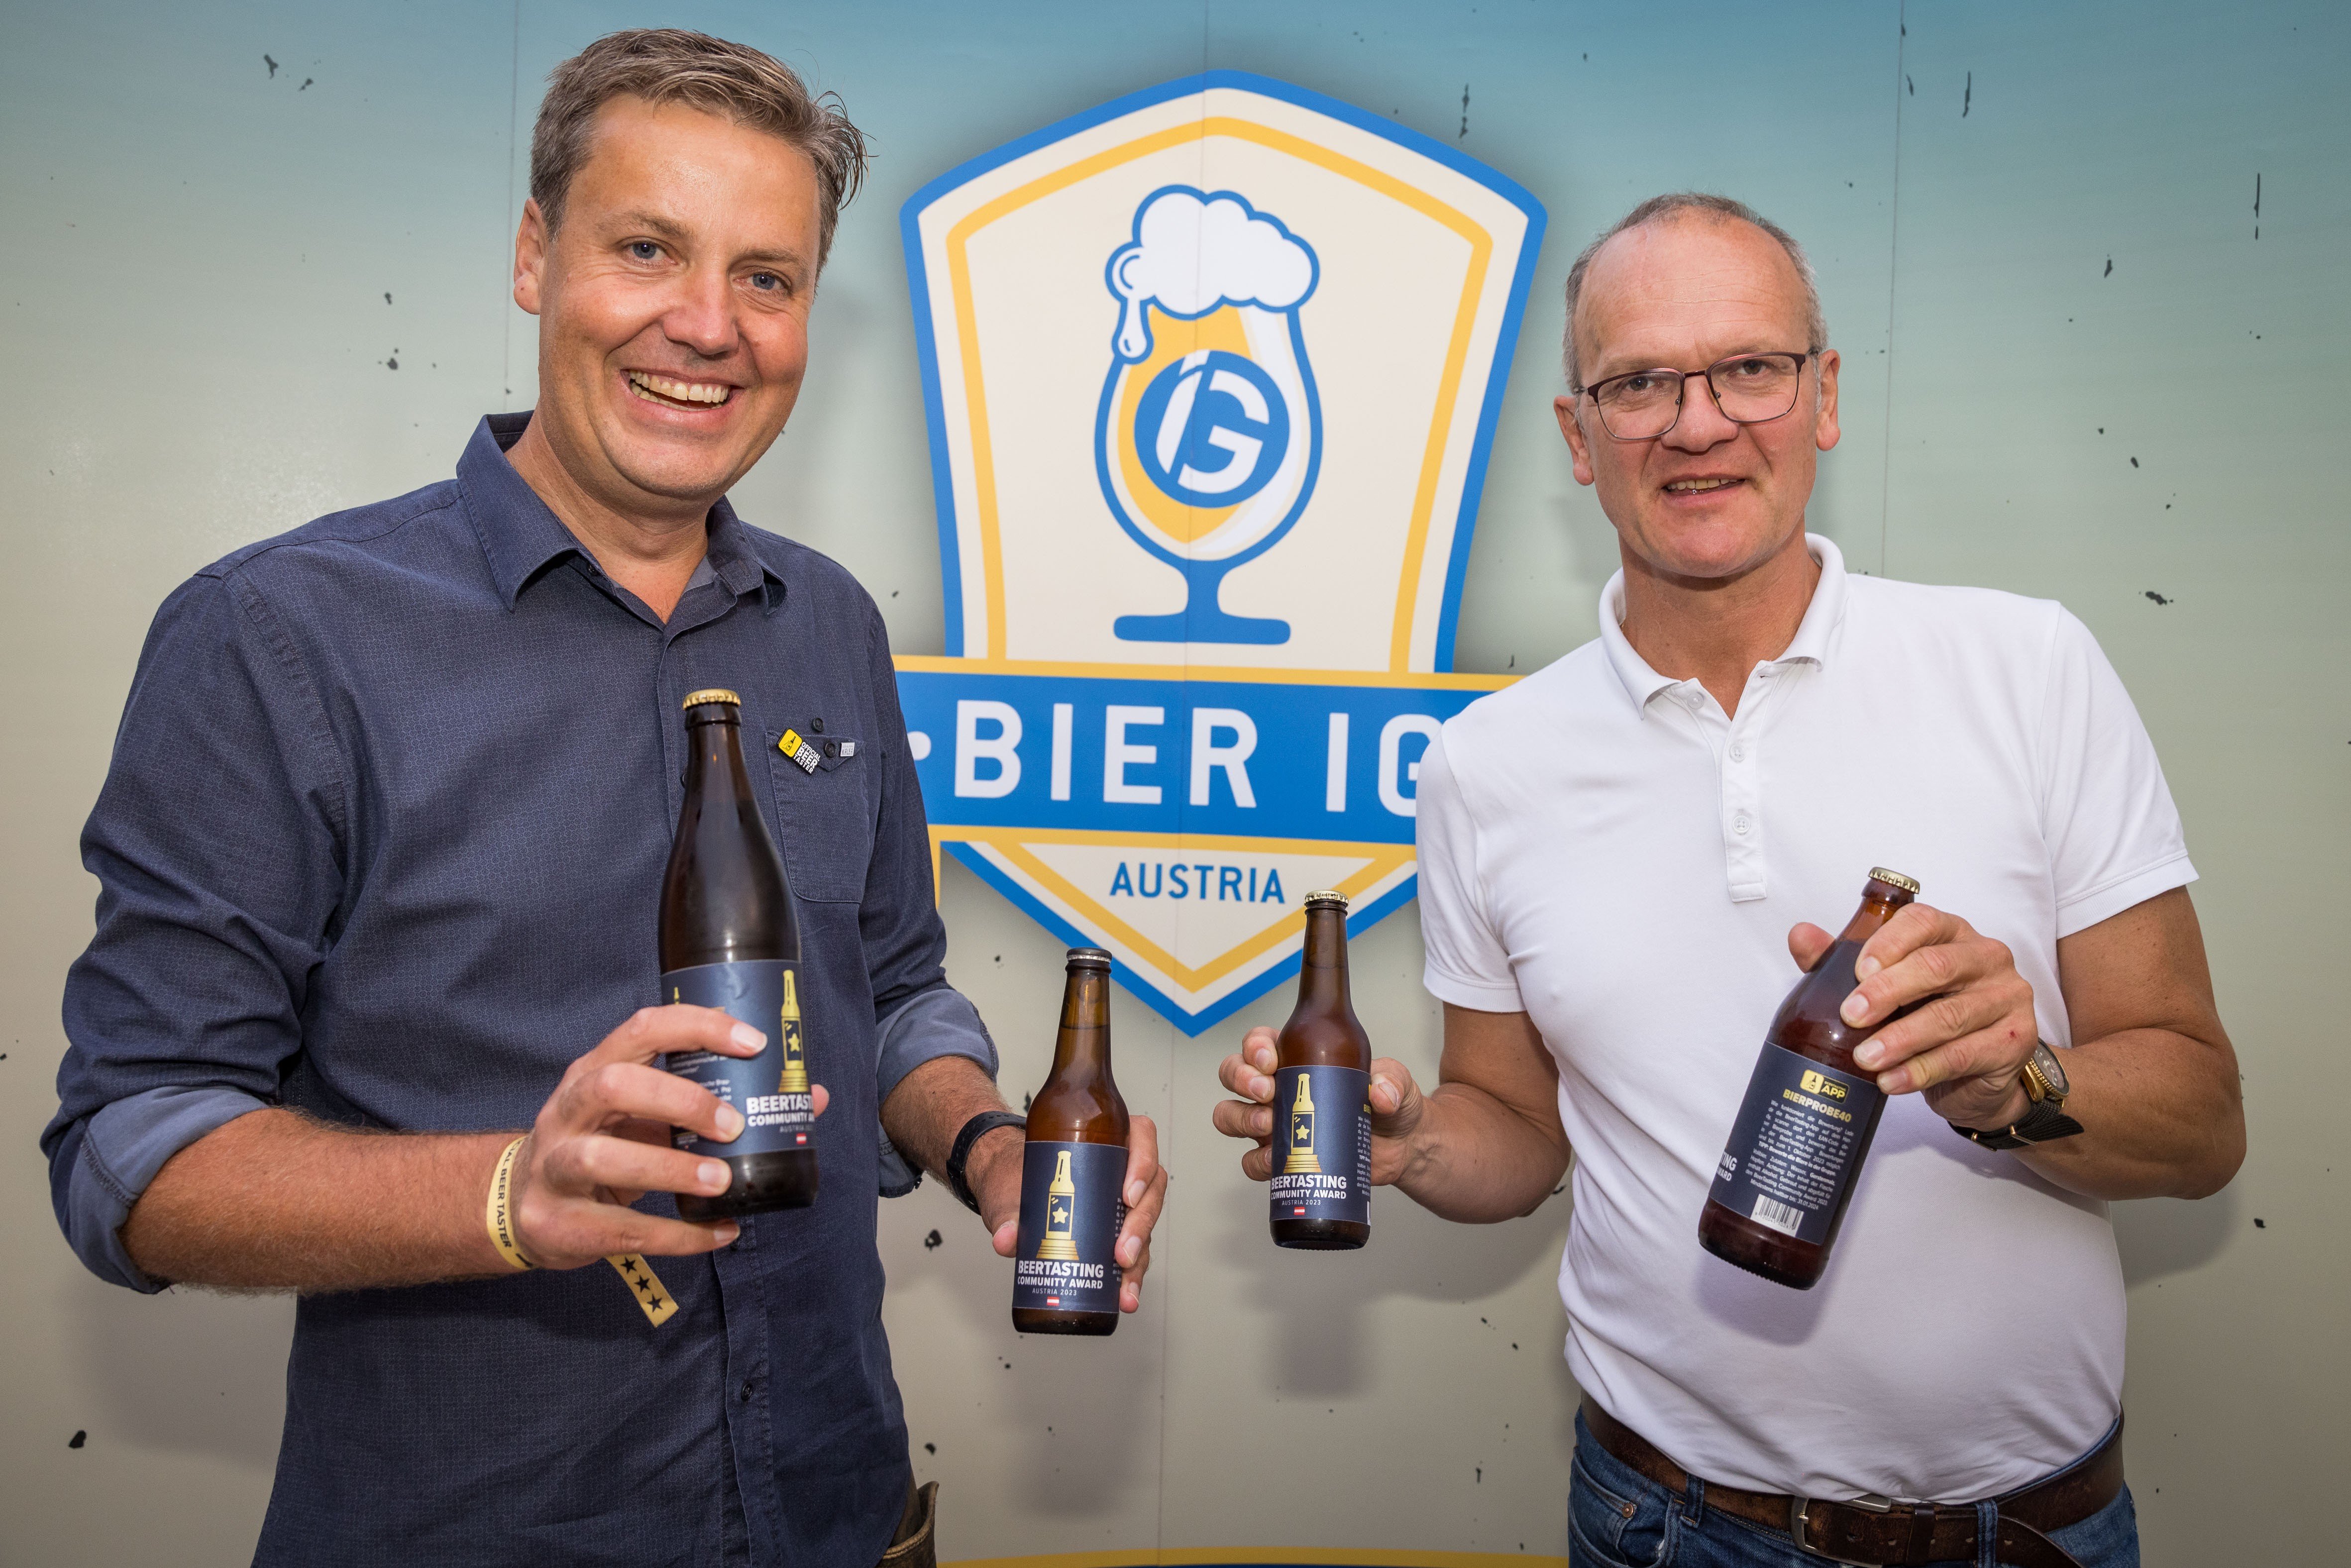 BeerTasting Community Award Brauerei aus Österreich